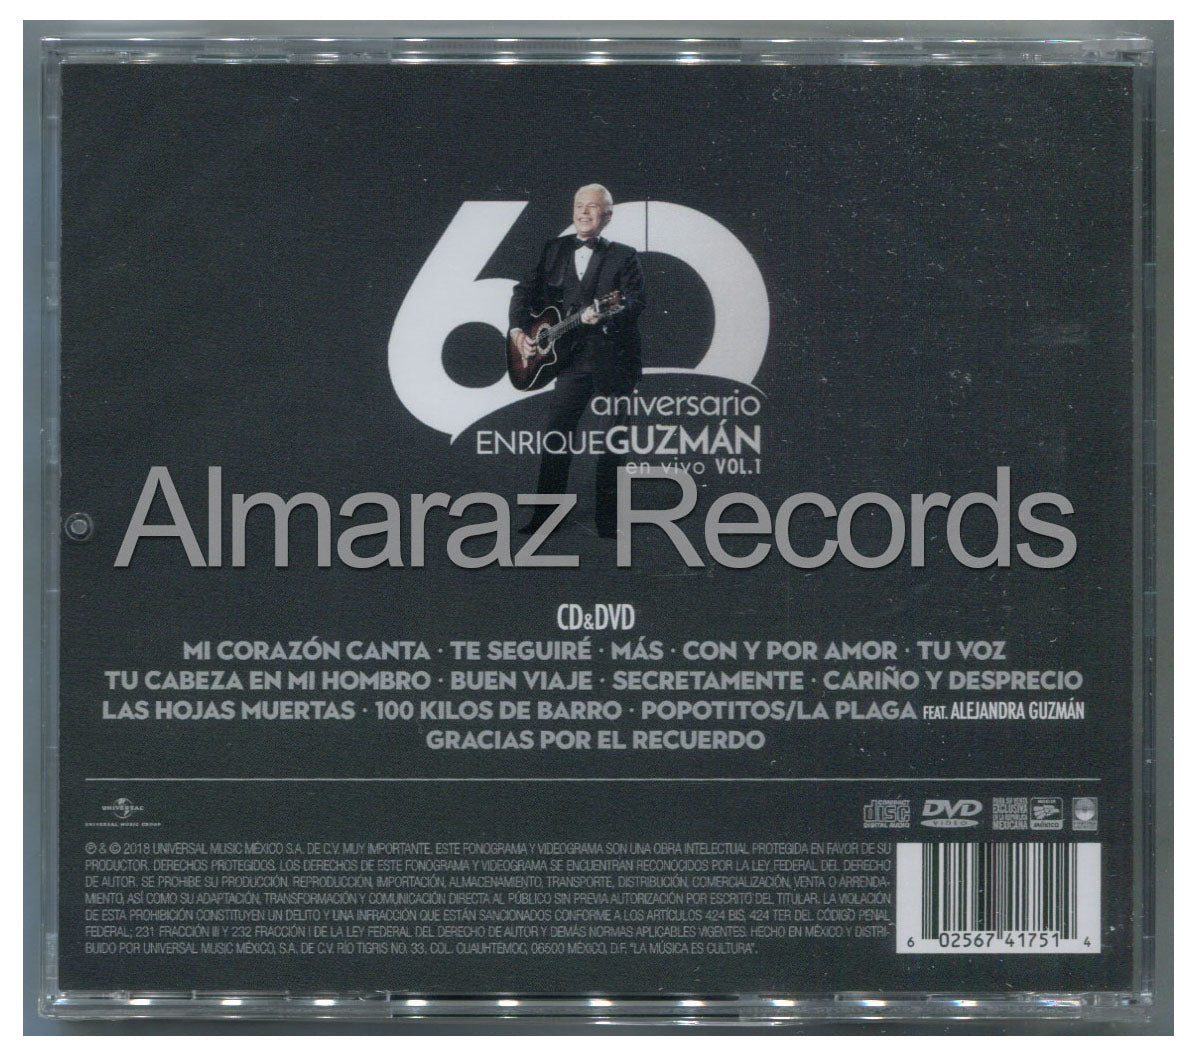 Enrique Guzman 60 Aniversario En Vivo Vol. 1 CD+DVD